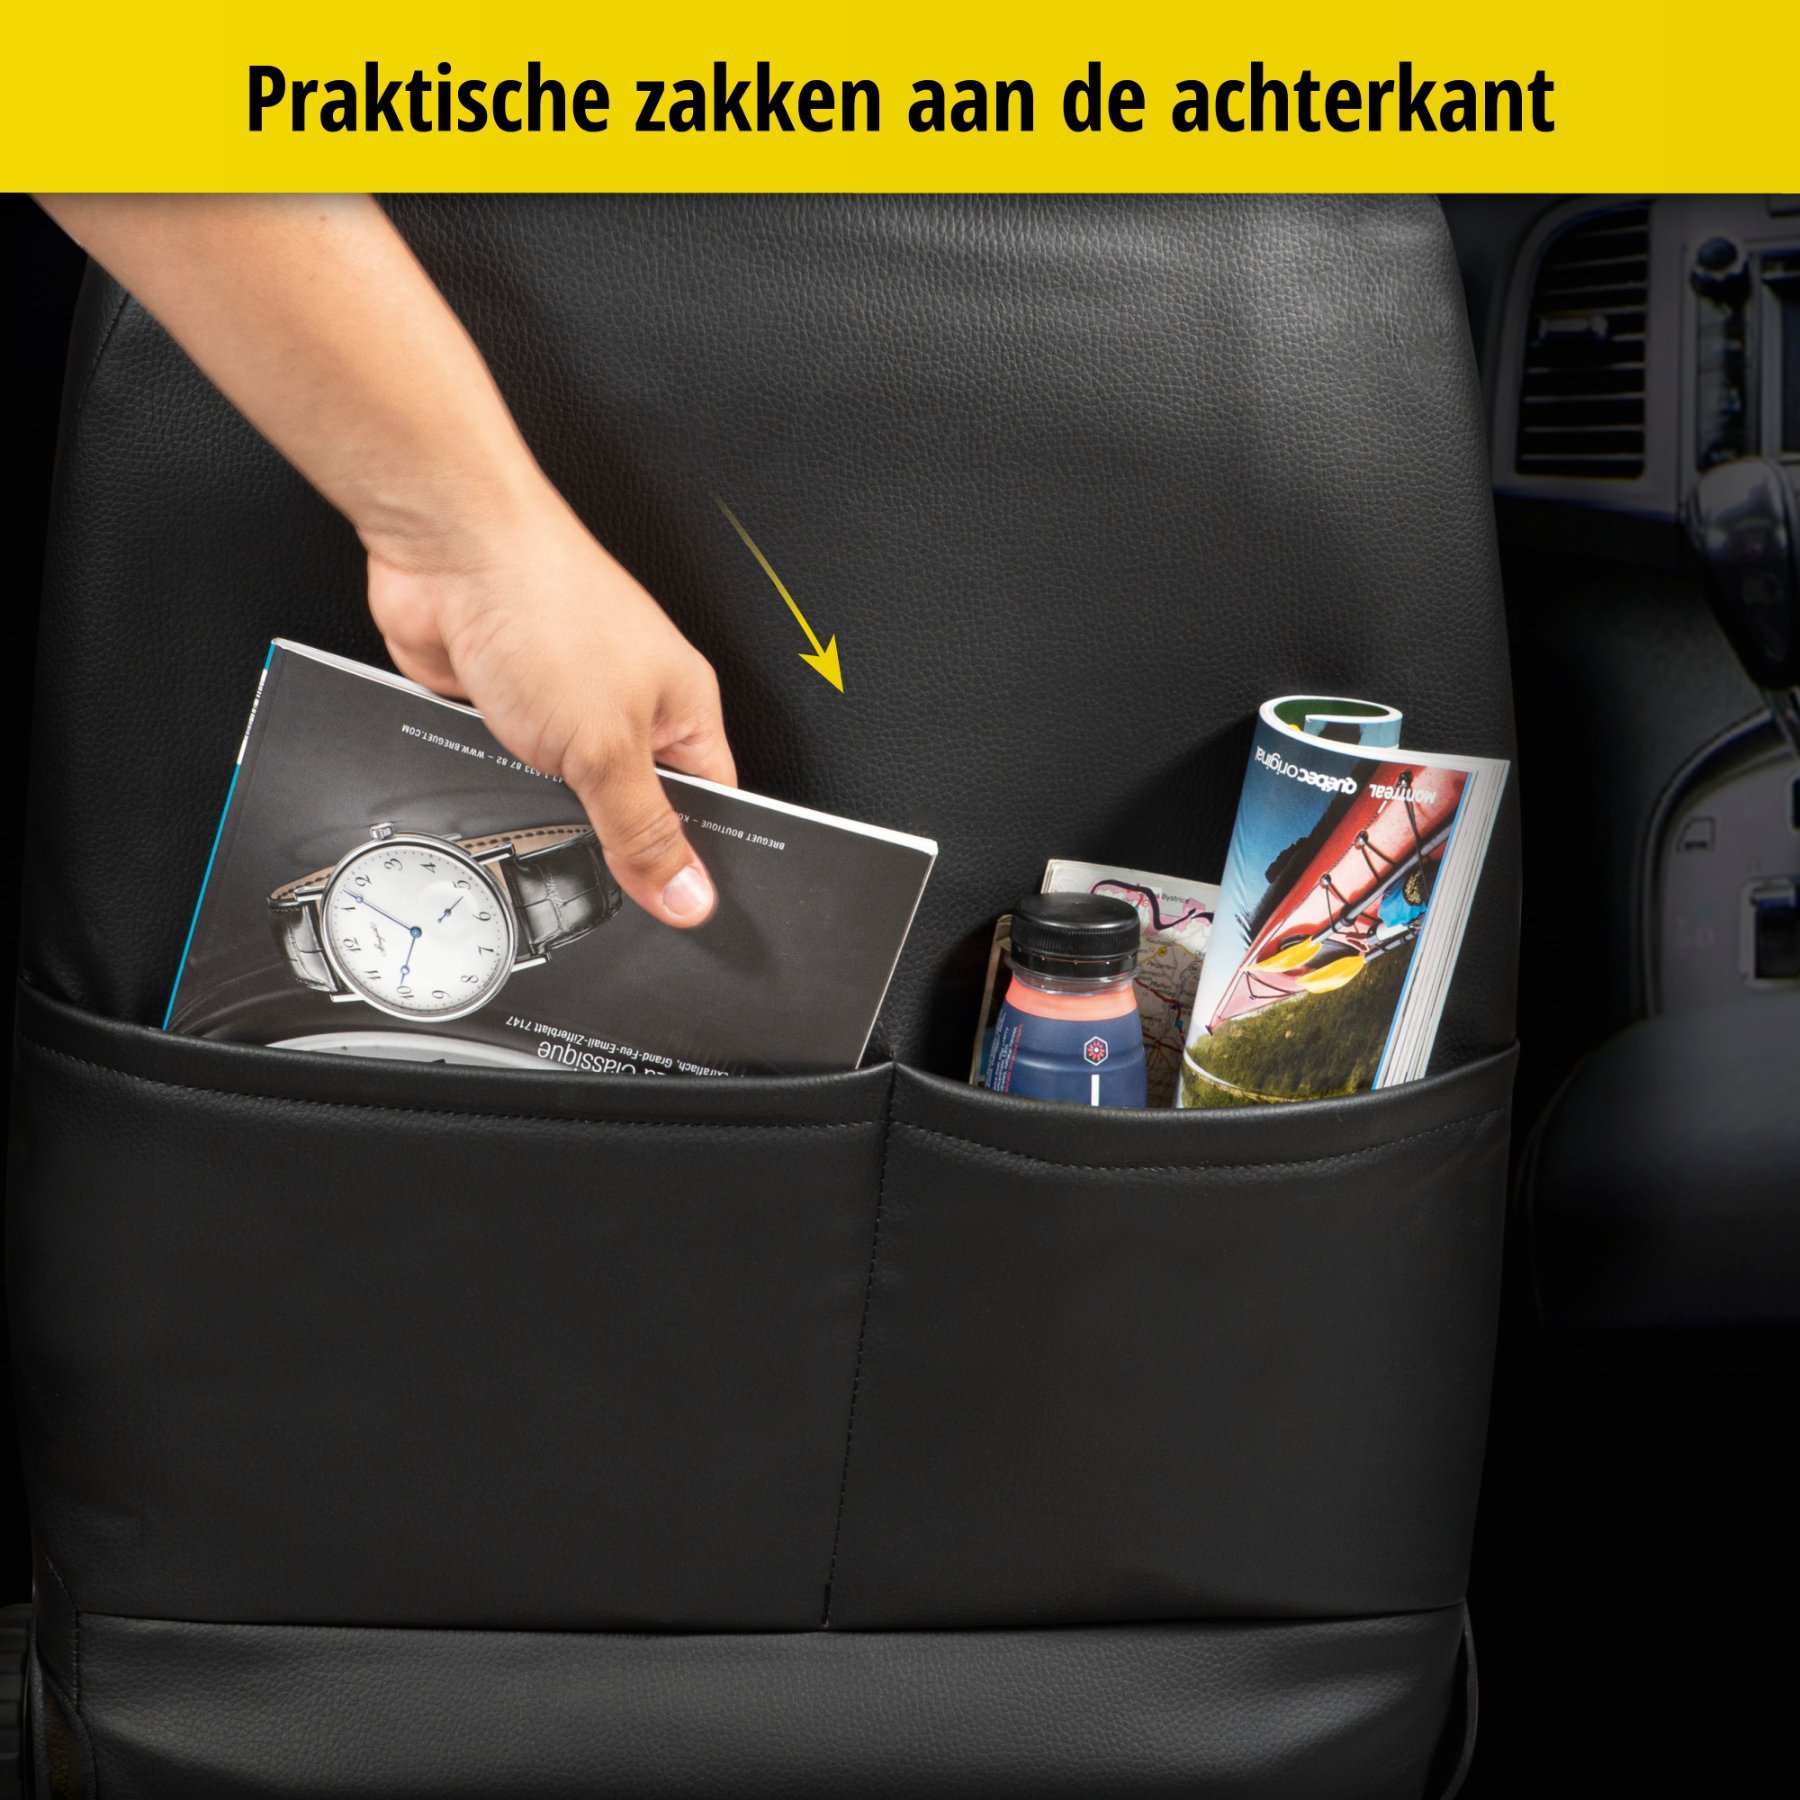 Auto stoelbekleding Robusto geschikt voor VW Passat Comfortline 08/2014-Vandaag, 2 enkele zetelhoezen voor standard zetels